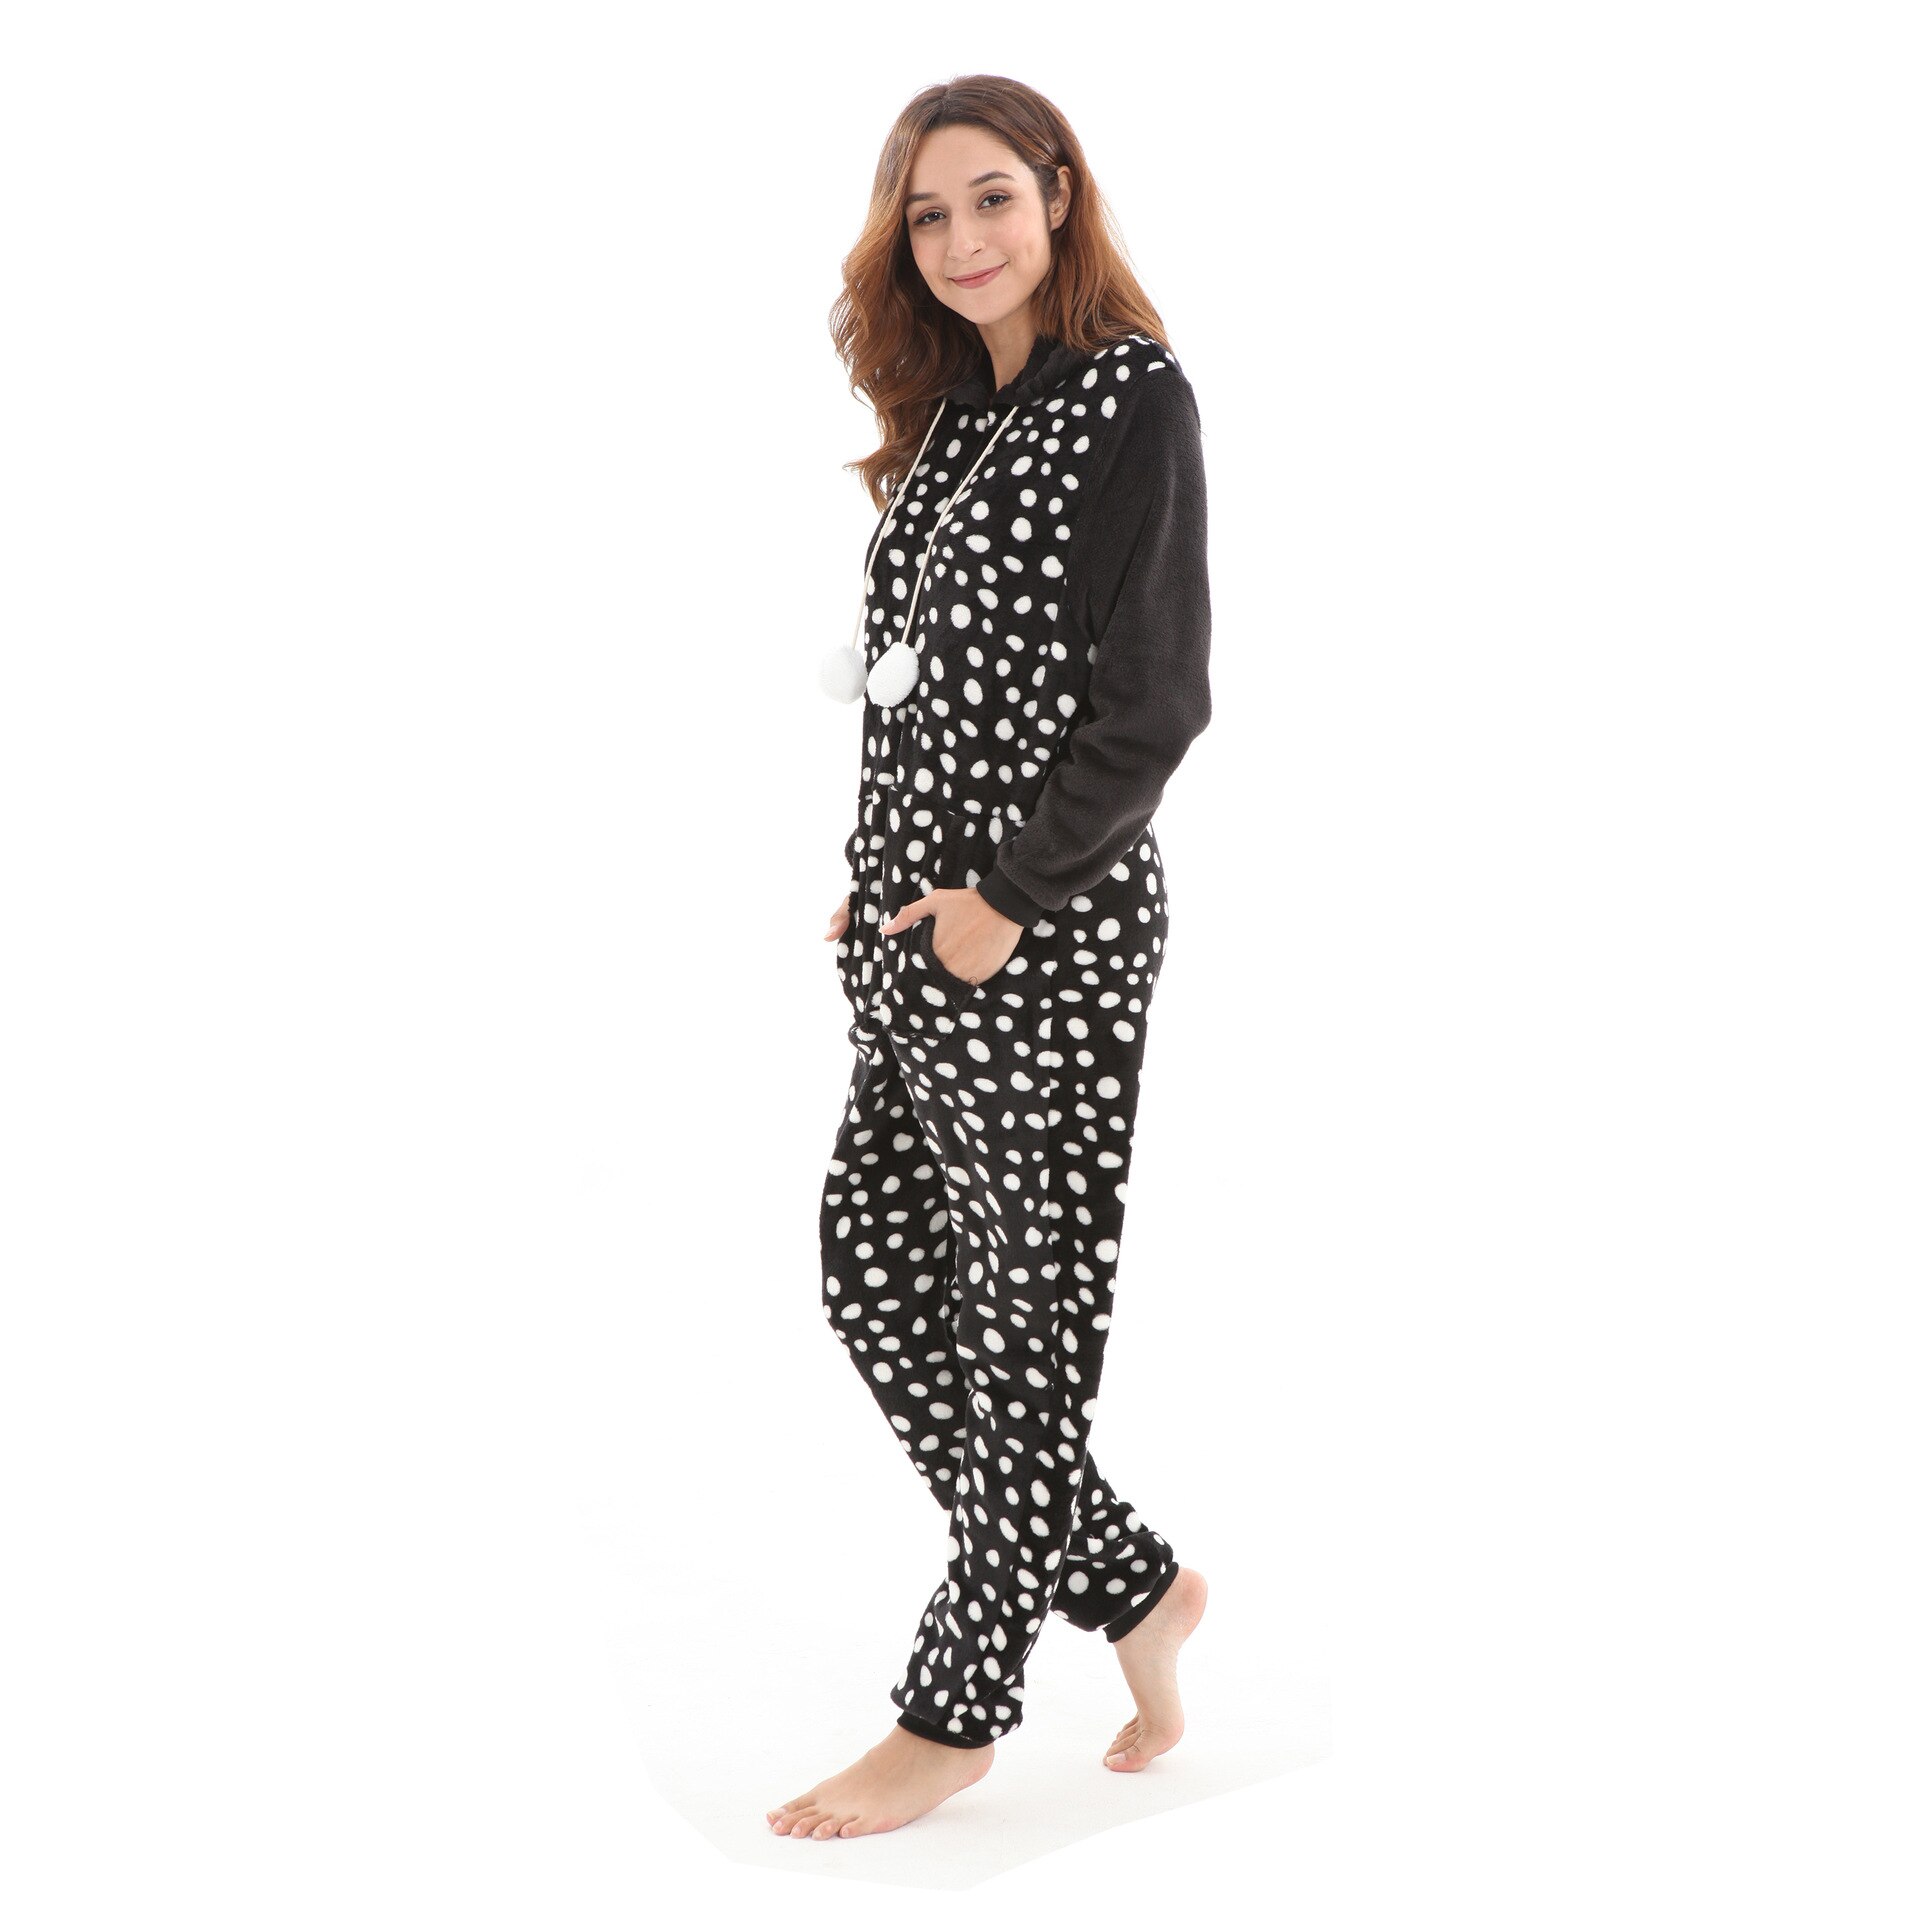 Dots Print Women Jumpsuit Pajamas Flannel Hooded Onesie Winter Full Sleeve Loose Rompers Sleepwear Black Casual Lady Playsuits